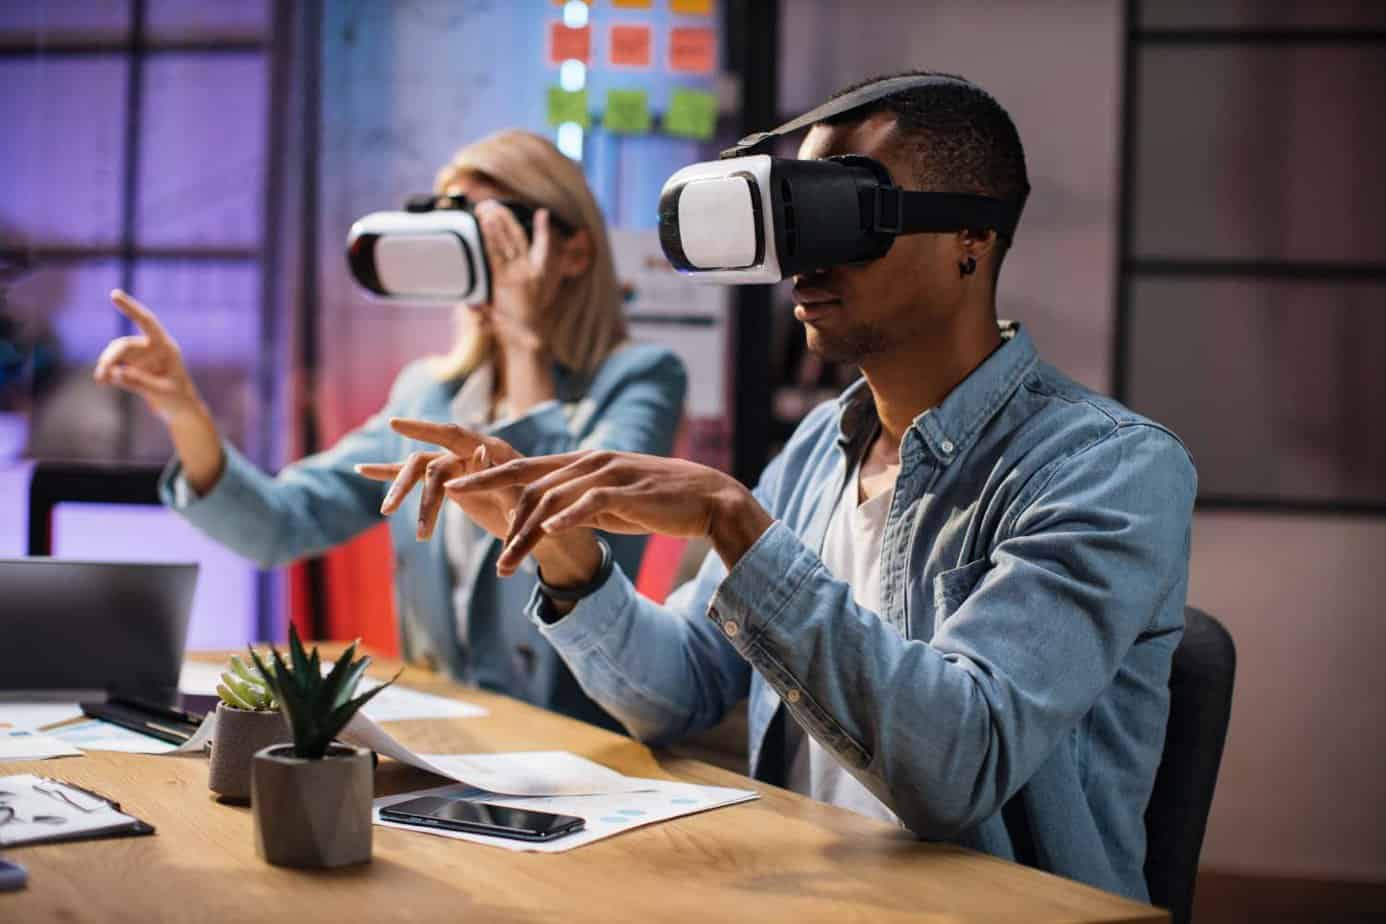 Jakie możliwości daje biznesowi wirtualna rzeczywistość?